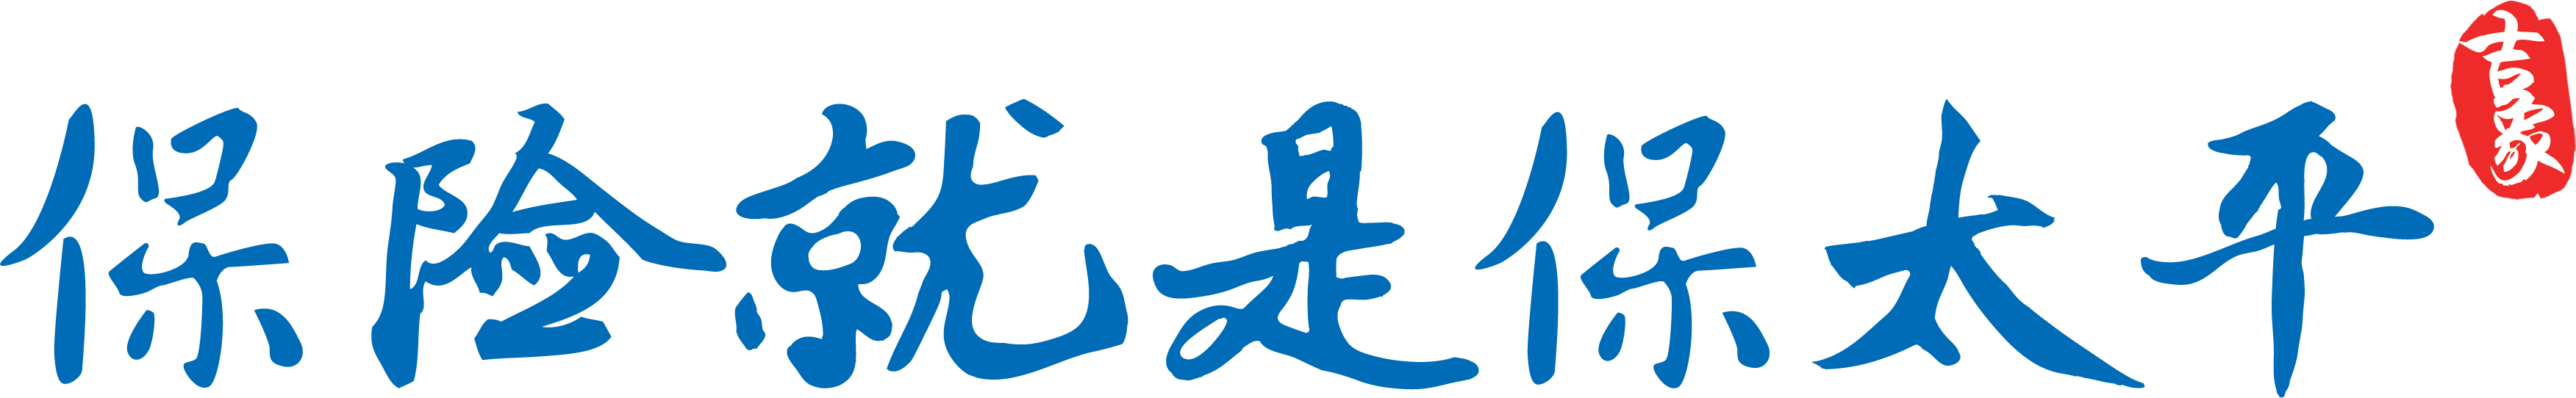 Chinese Slogan